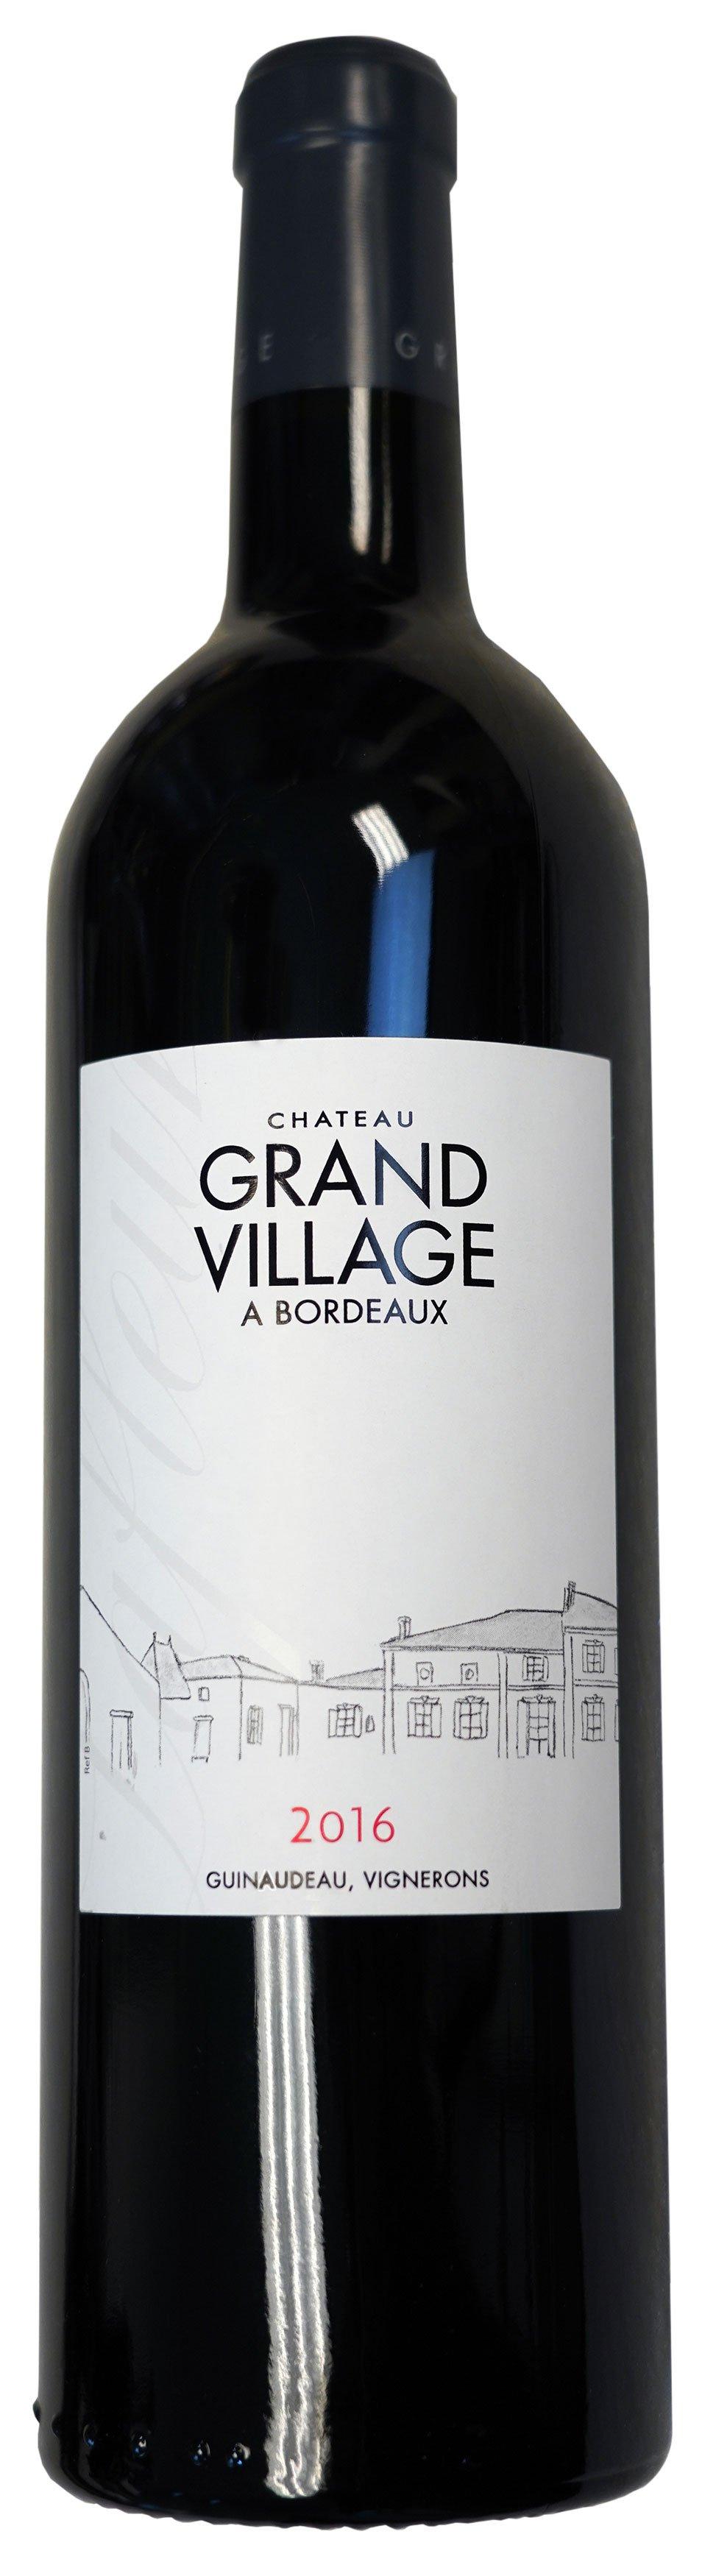 Chateau Grand Village 2016 Bordeaux Superieur